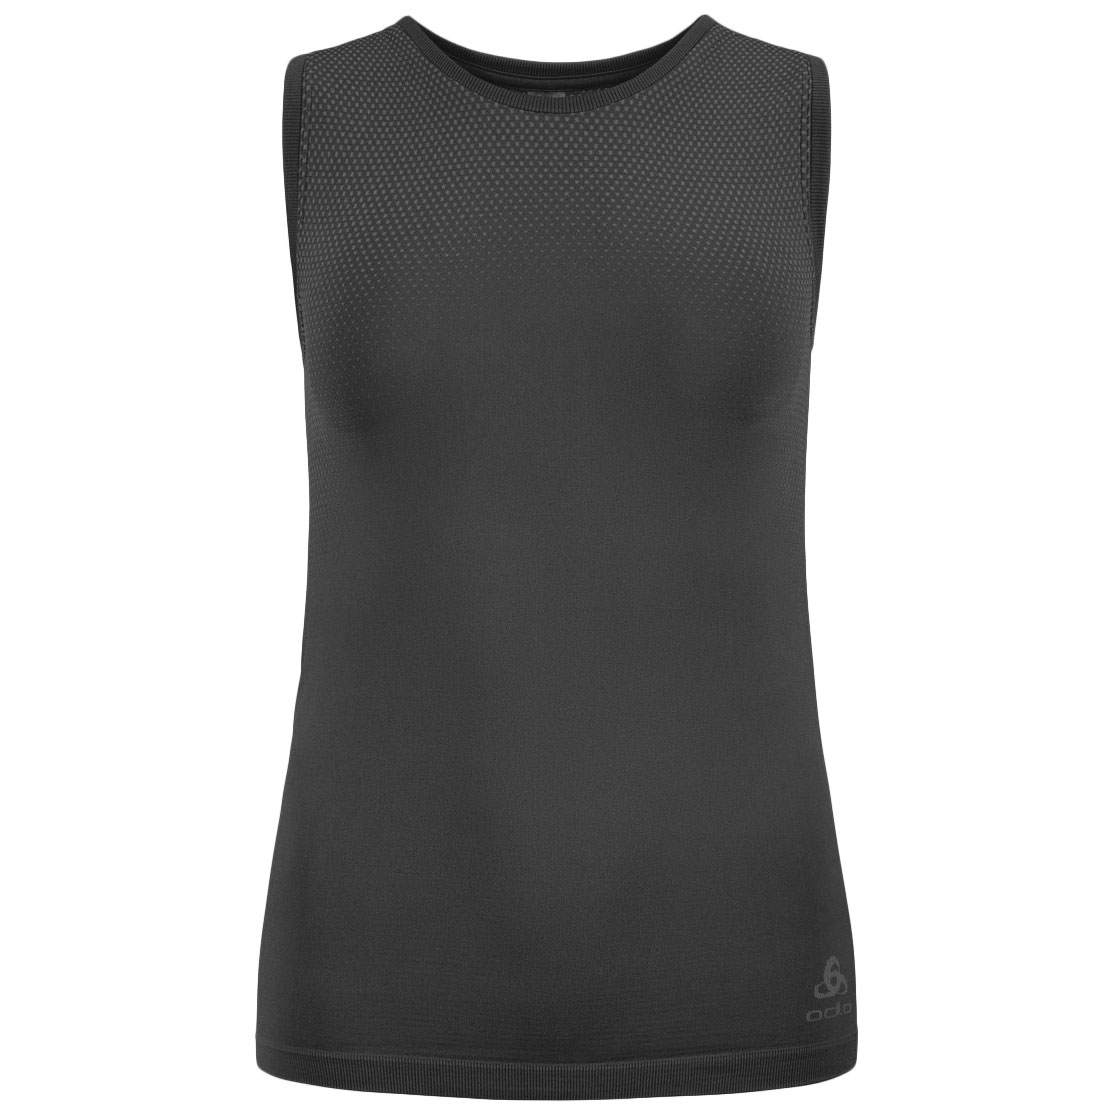 Productfoto van Odlo Performance Light Hemd zonder Mouwen Dames - zwart